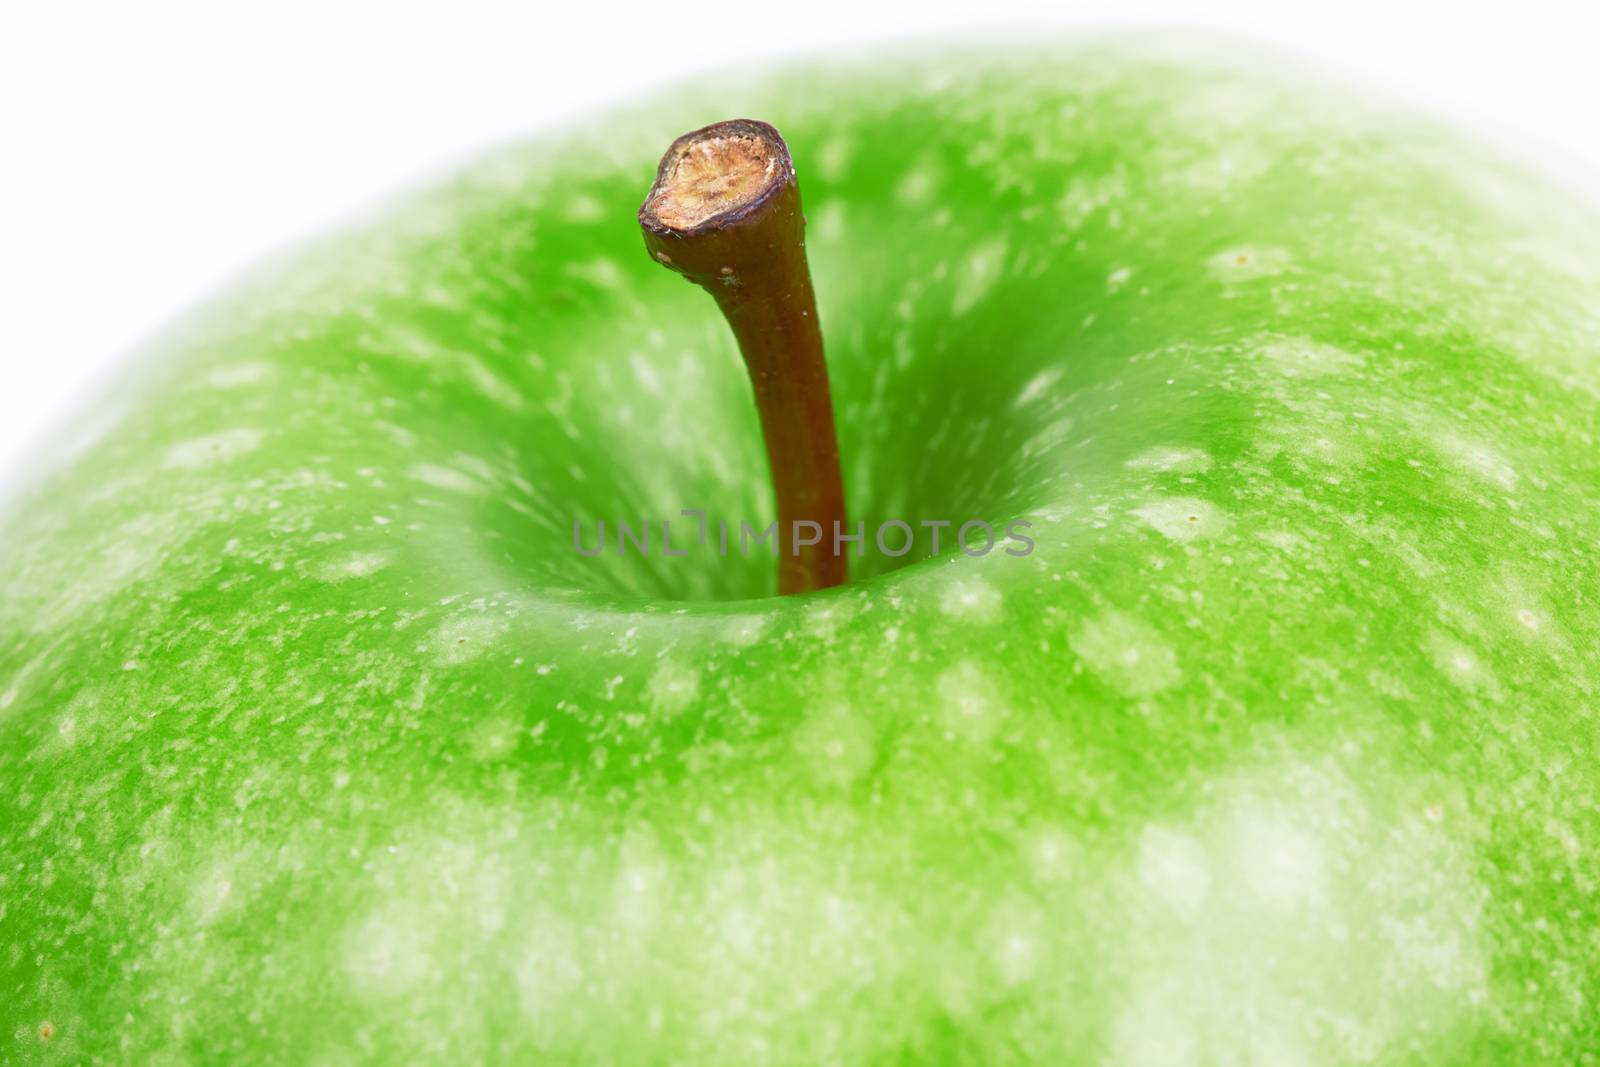 Green apple  by pioneer111